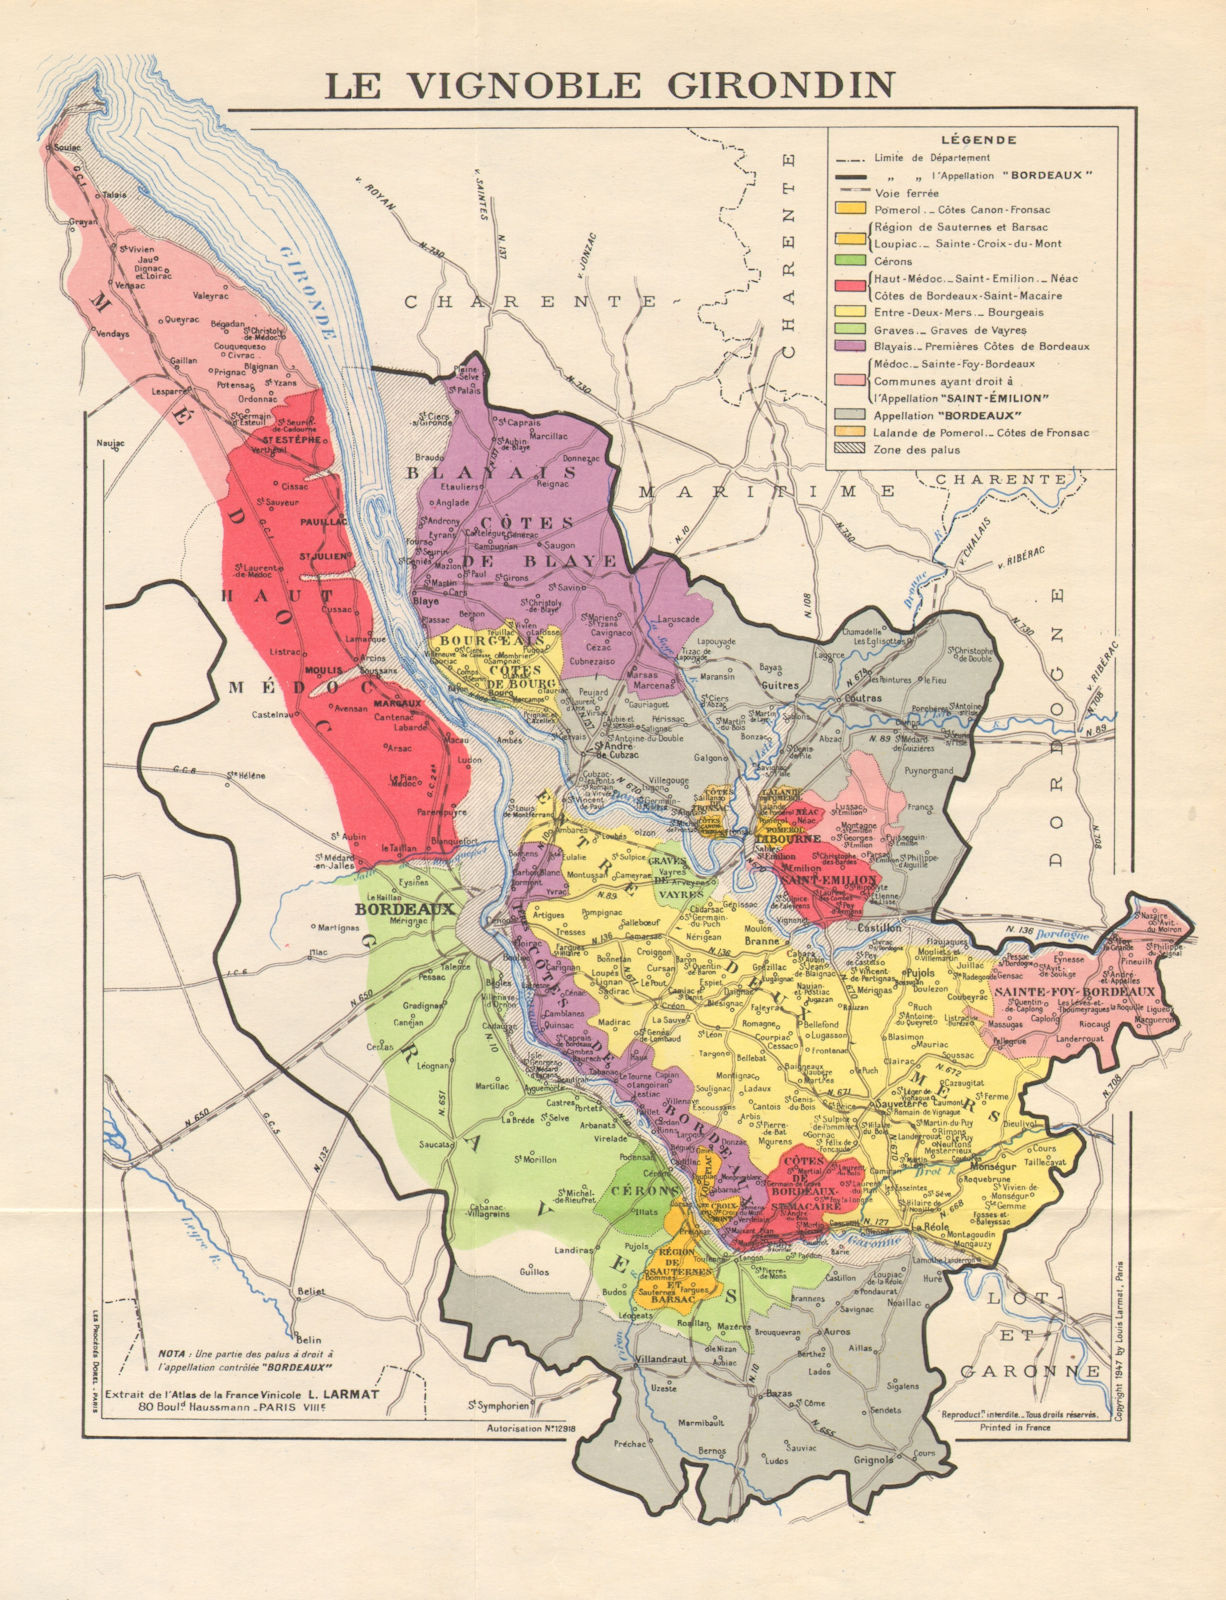 BORDEAUX WINE. Les Vins de Bordeaux - Le Vignoble Girondon. LARMAT 1947 map